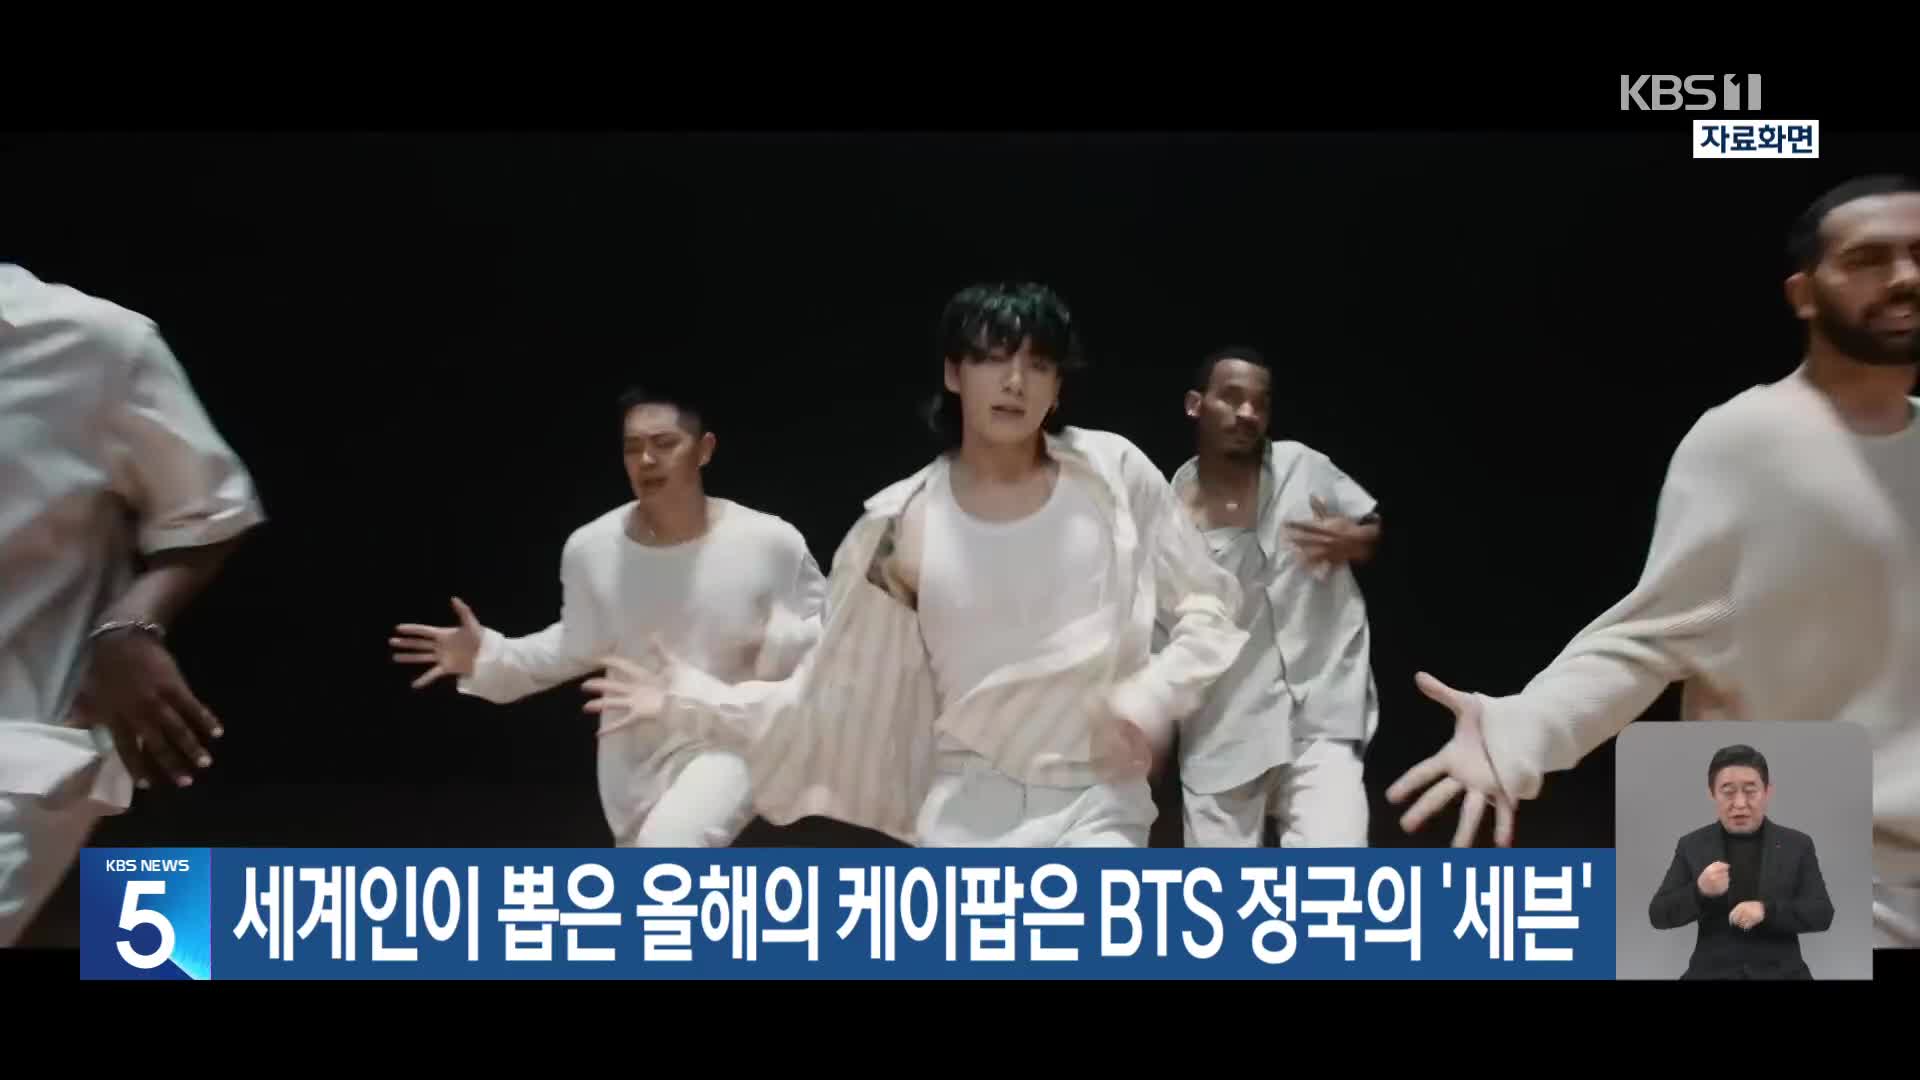 세계인이 뽑은 올해의 케이팝은 BTS 정국의 ‘세븐’